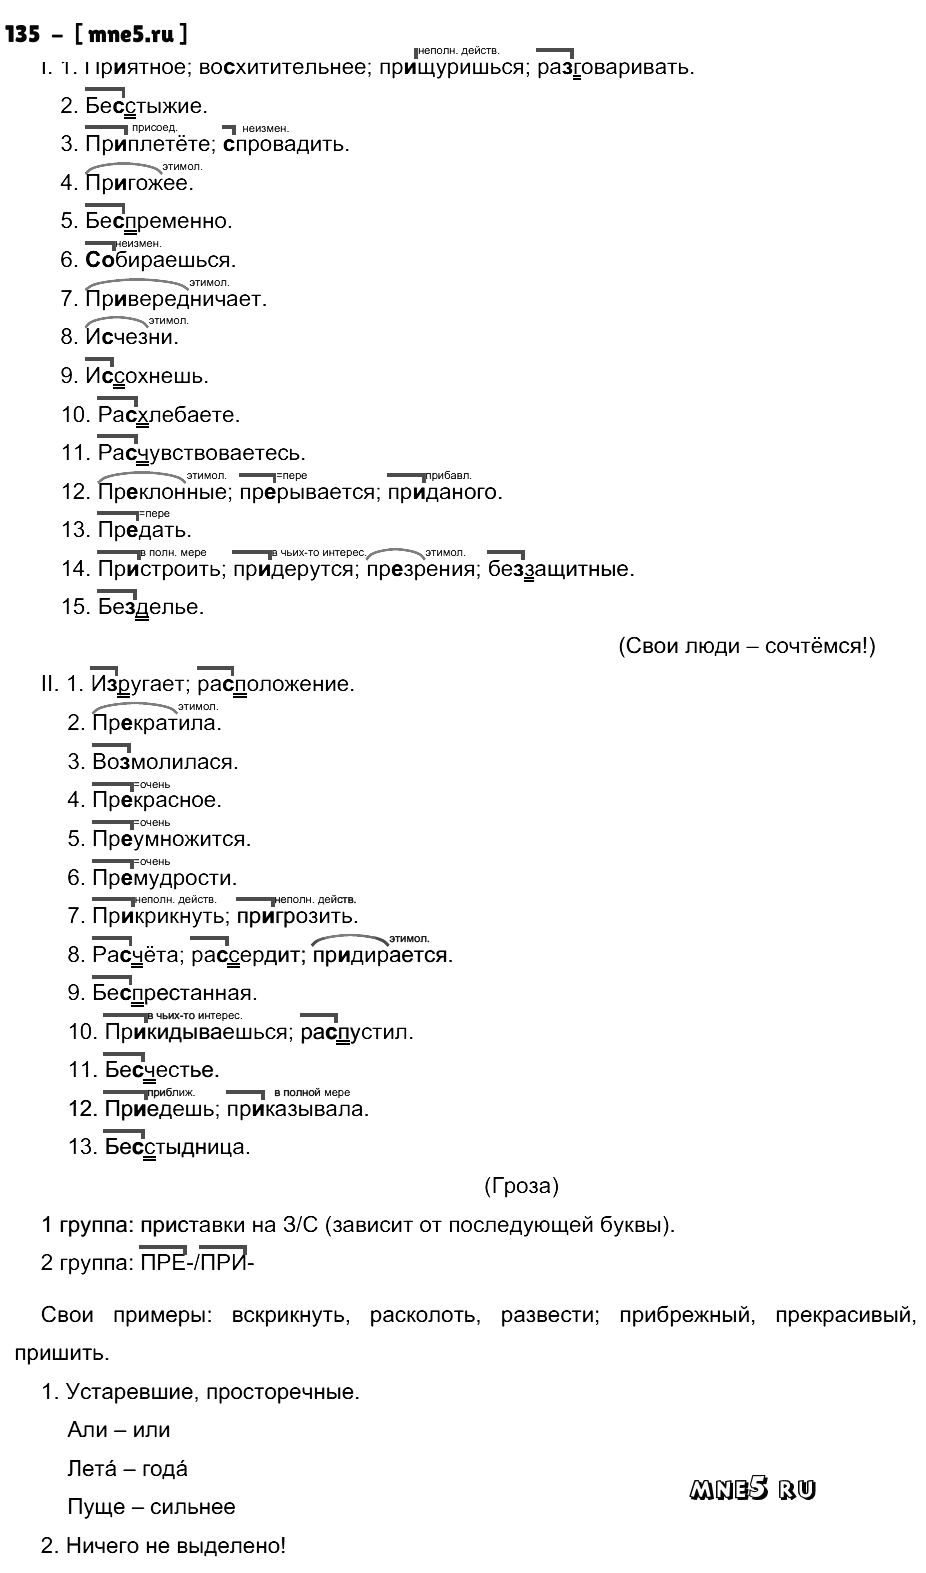 ГДЗ Русский язык 10 класс - 135